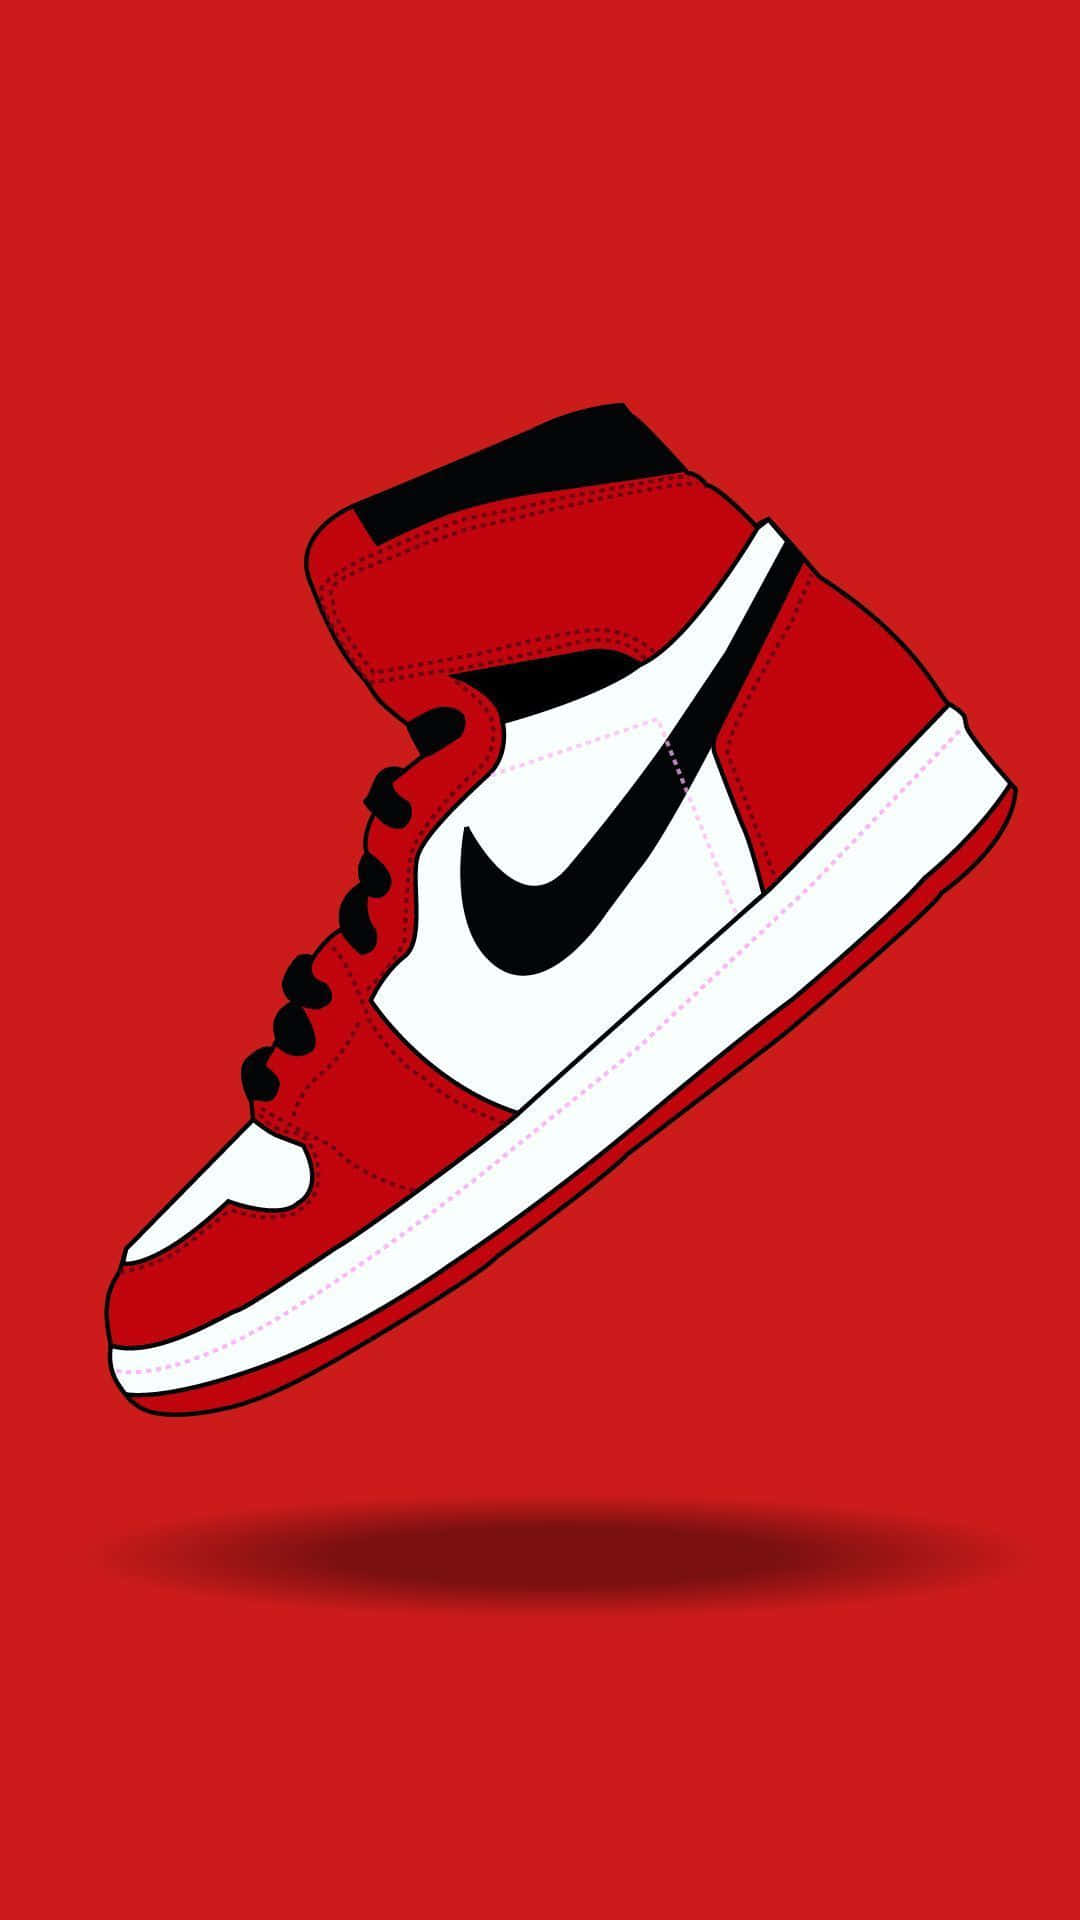 Unazapatilla Nike Roja Y Blanca Sobre Un Fondo Rojo Fondo de pantalla